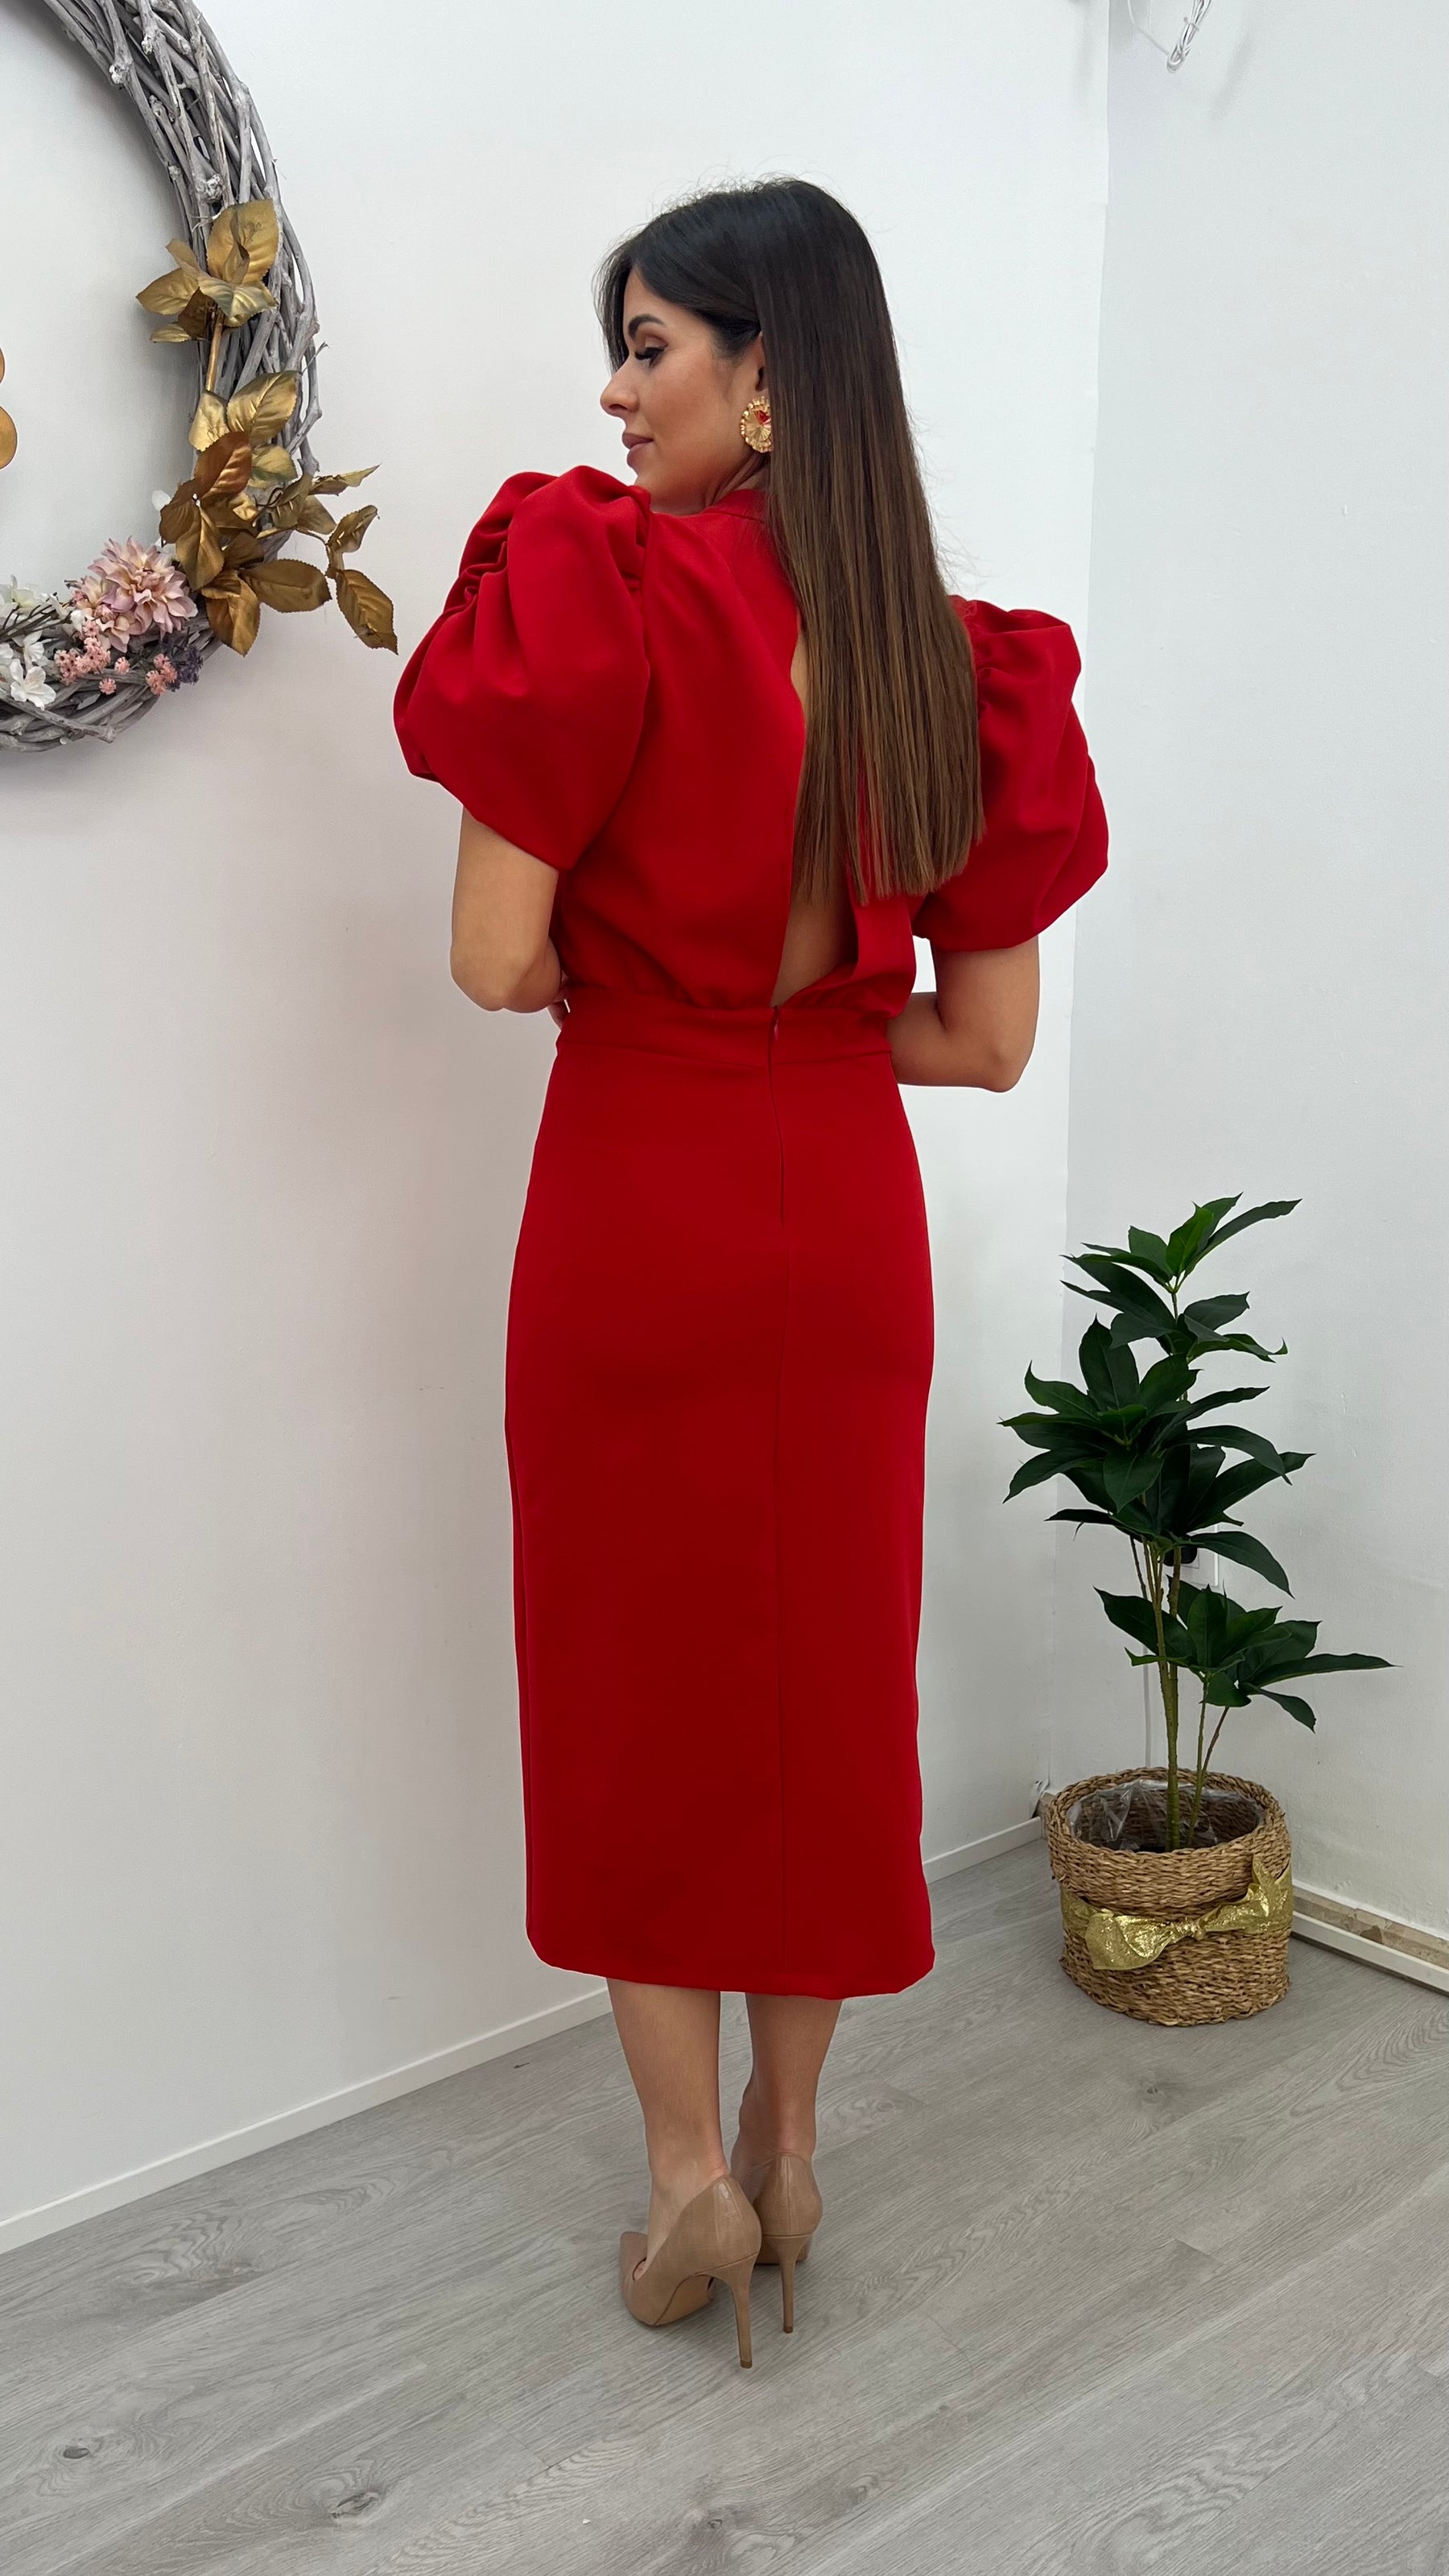 Vestido Angeles Rojo “Made in Spain”